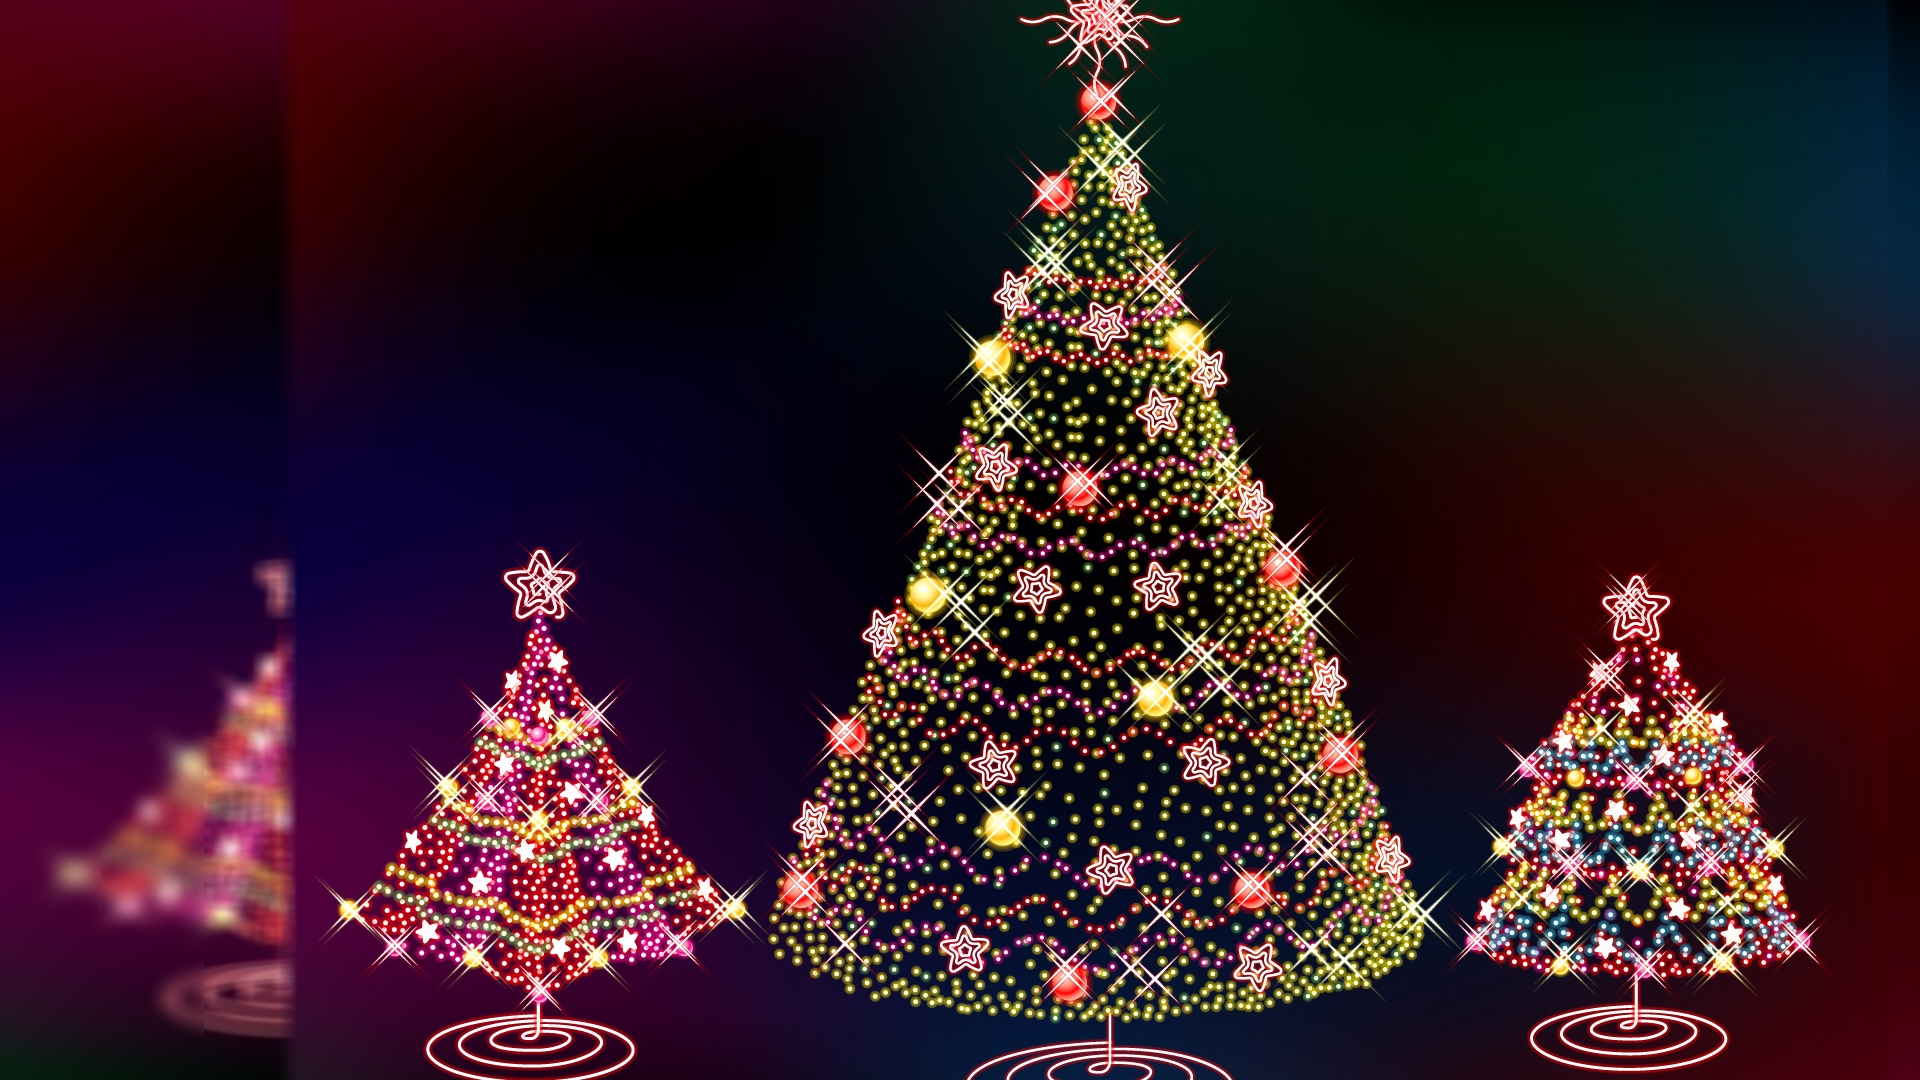 クリスマスの壁紙,クリスマスツリー,クリスマスの飾り,クリスマスオーナメント,木,クリスマス